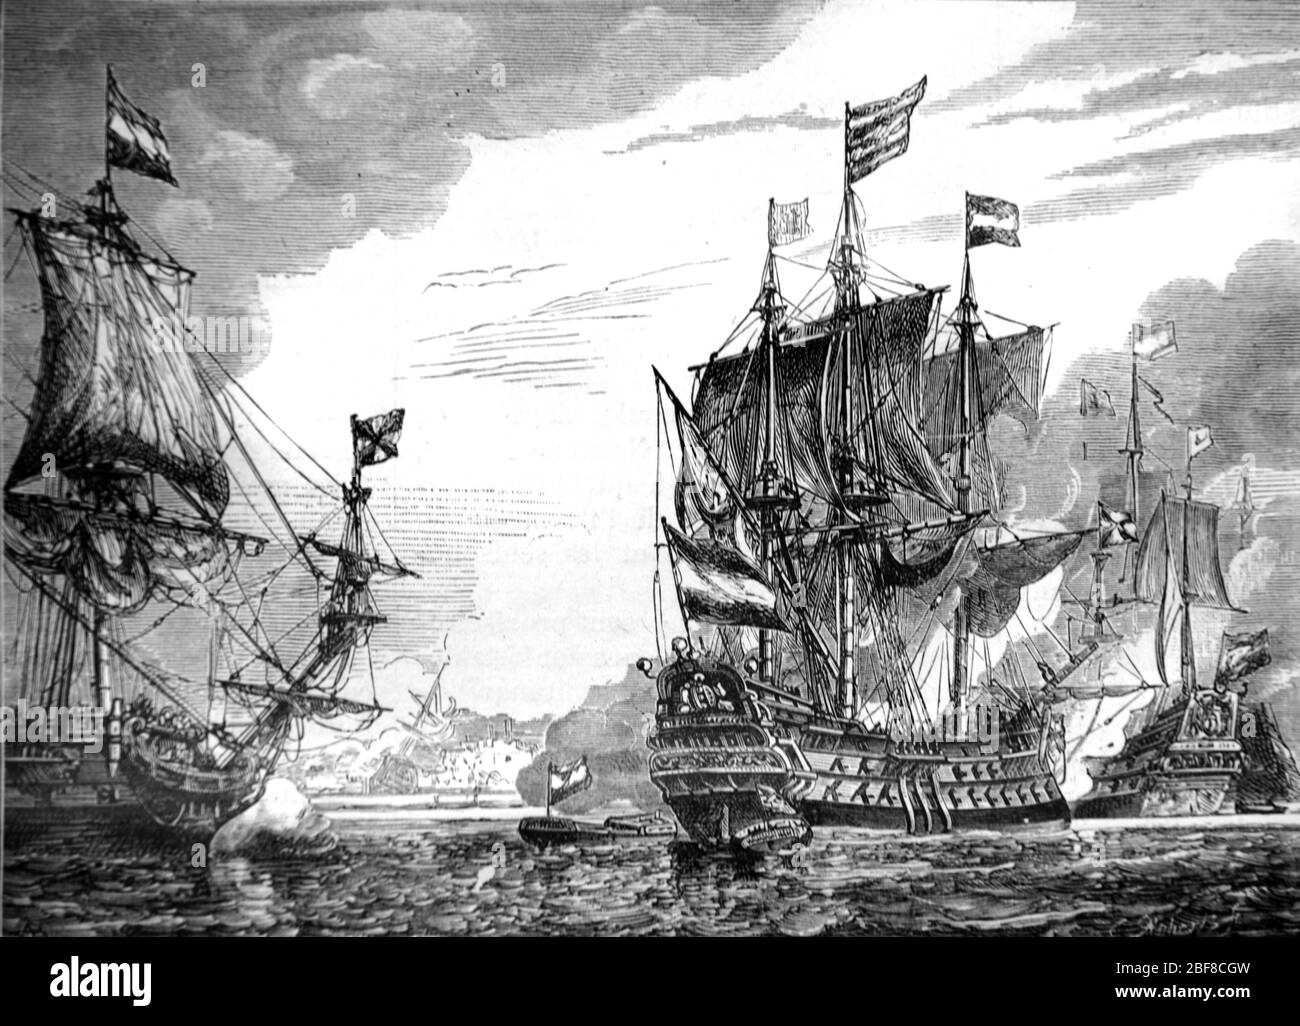 Spanische Armada Seeschlacht gegen die britische Royal Navy oder englische Flotte im Ärmelkanal. Die Armada bewältigt 130 spanische Schiffe, Teil des Anglo-Spanischen Krieges (1585-1604) und des Achtzigjährigen Krieges. Vintage oder Alte Illustration oder Gravur 1888 Stockfoto